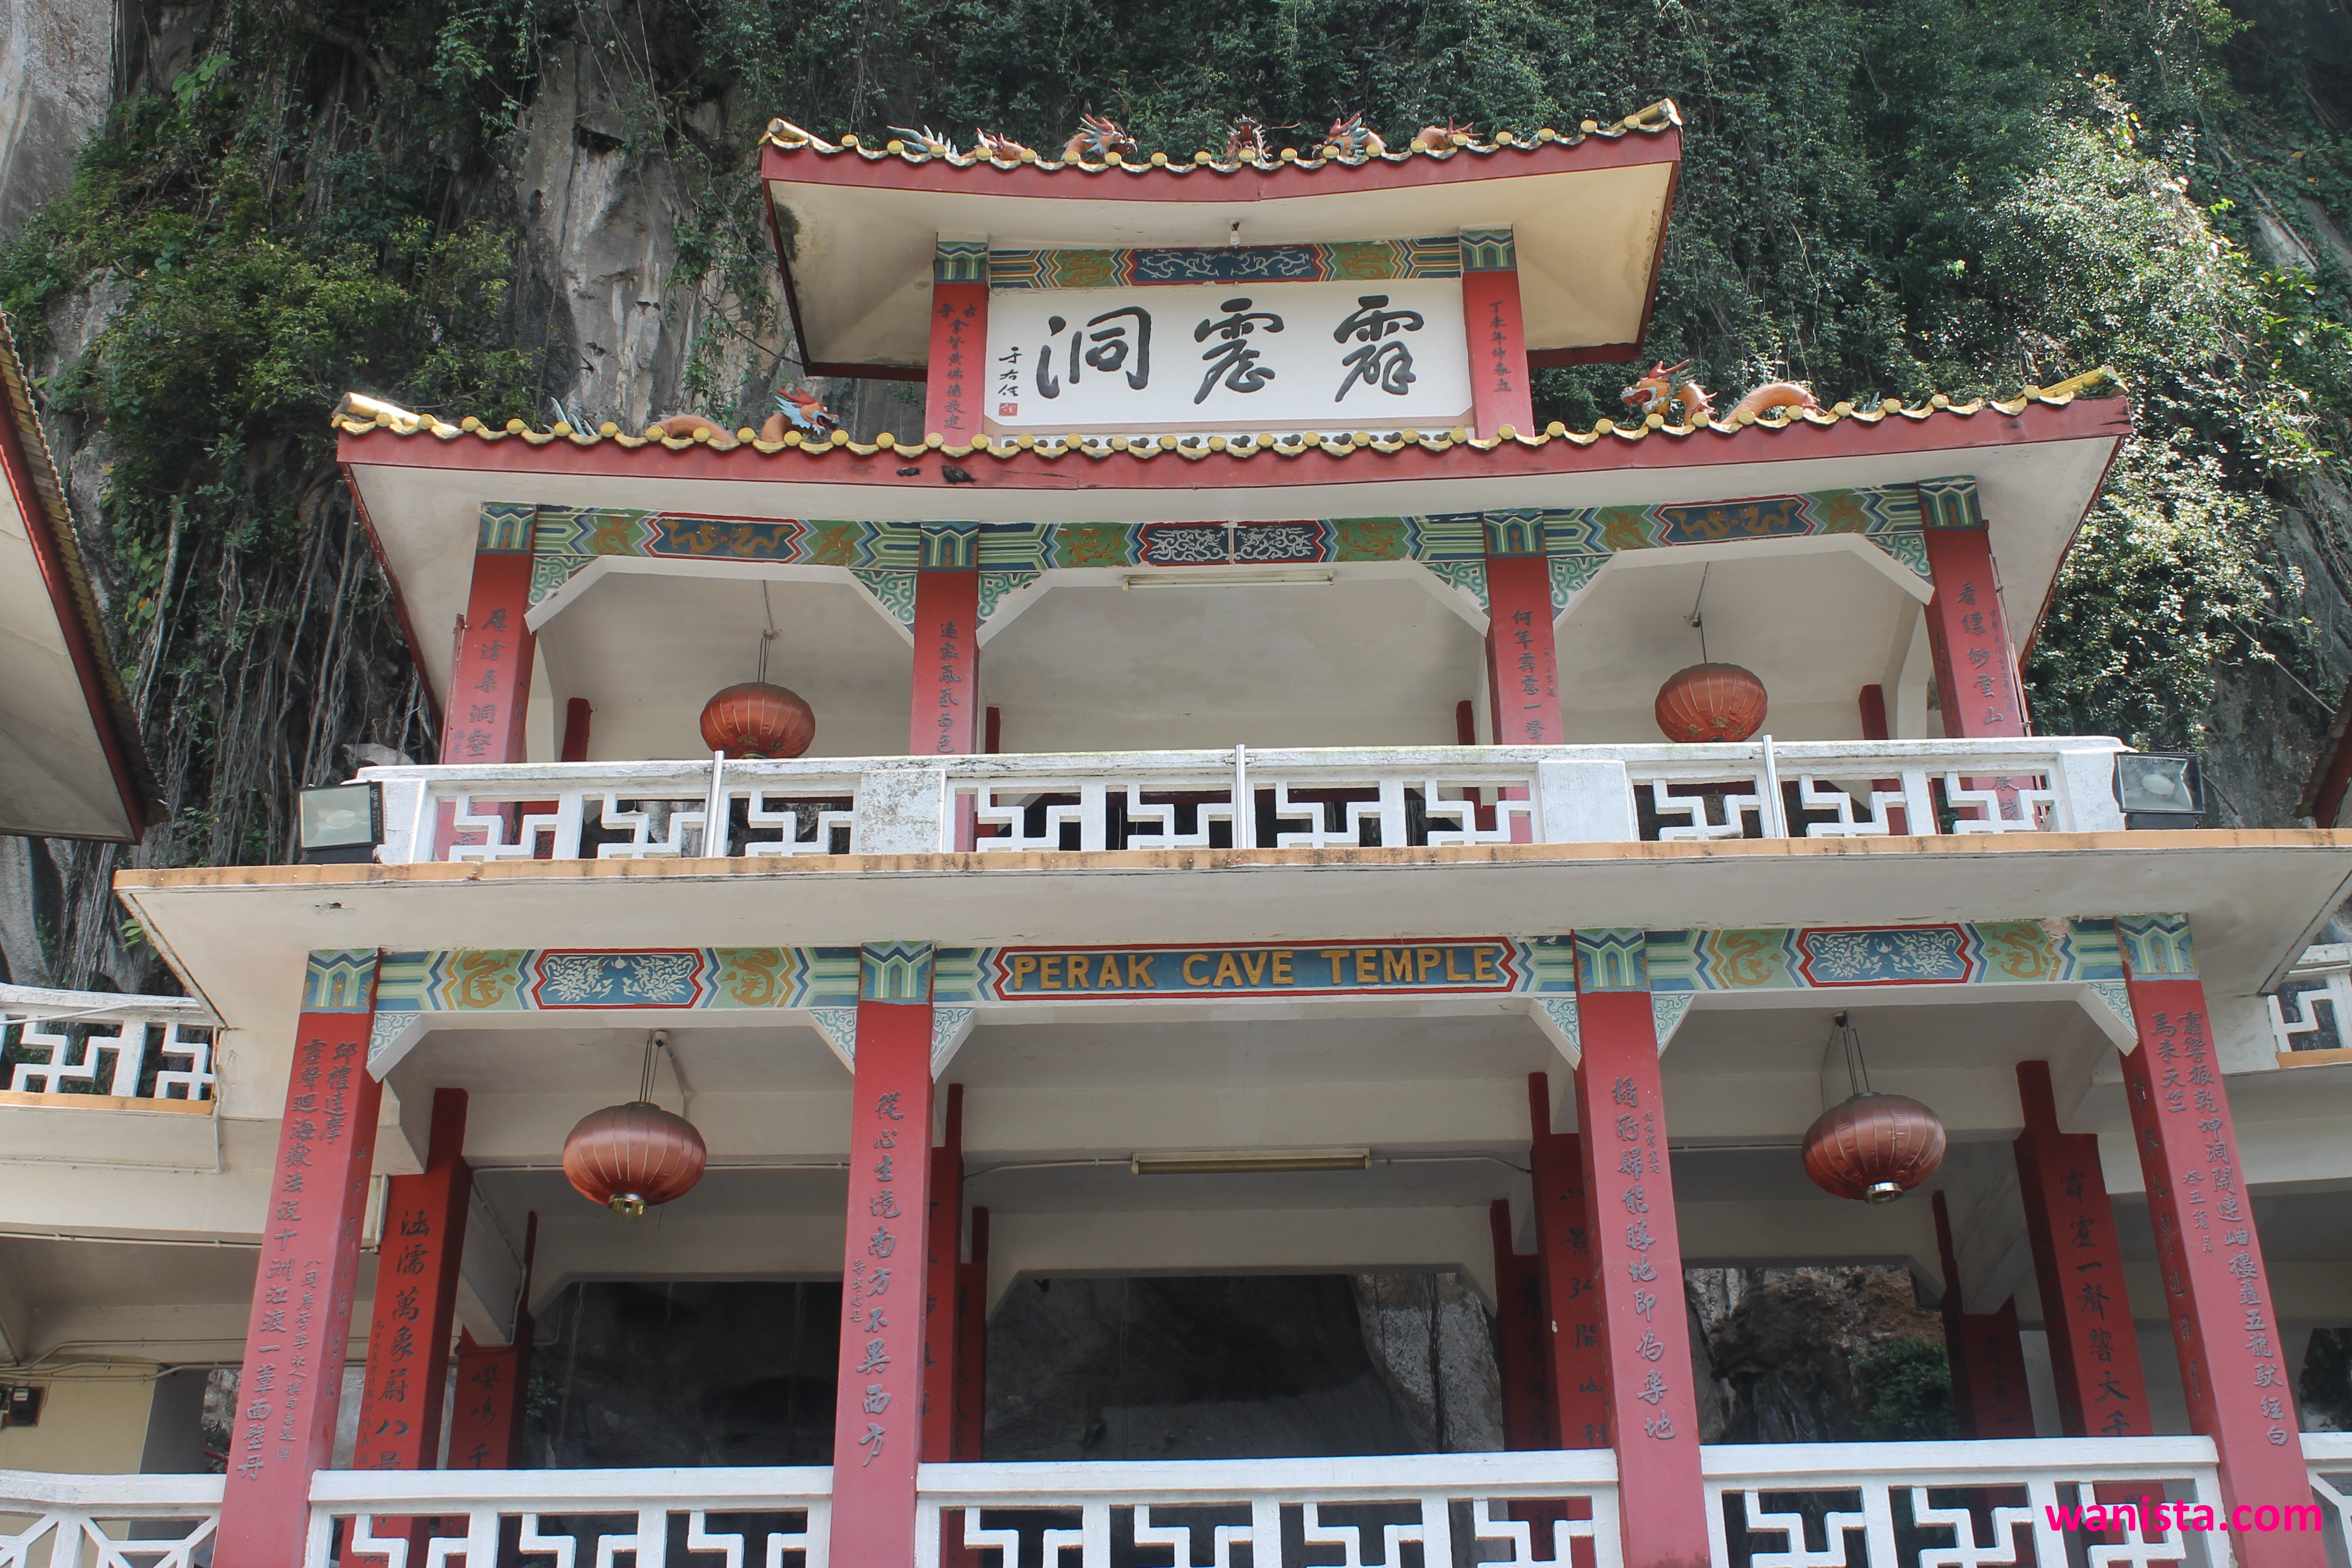 Perak Cave Temple, Ipoh